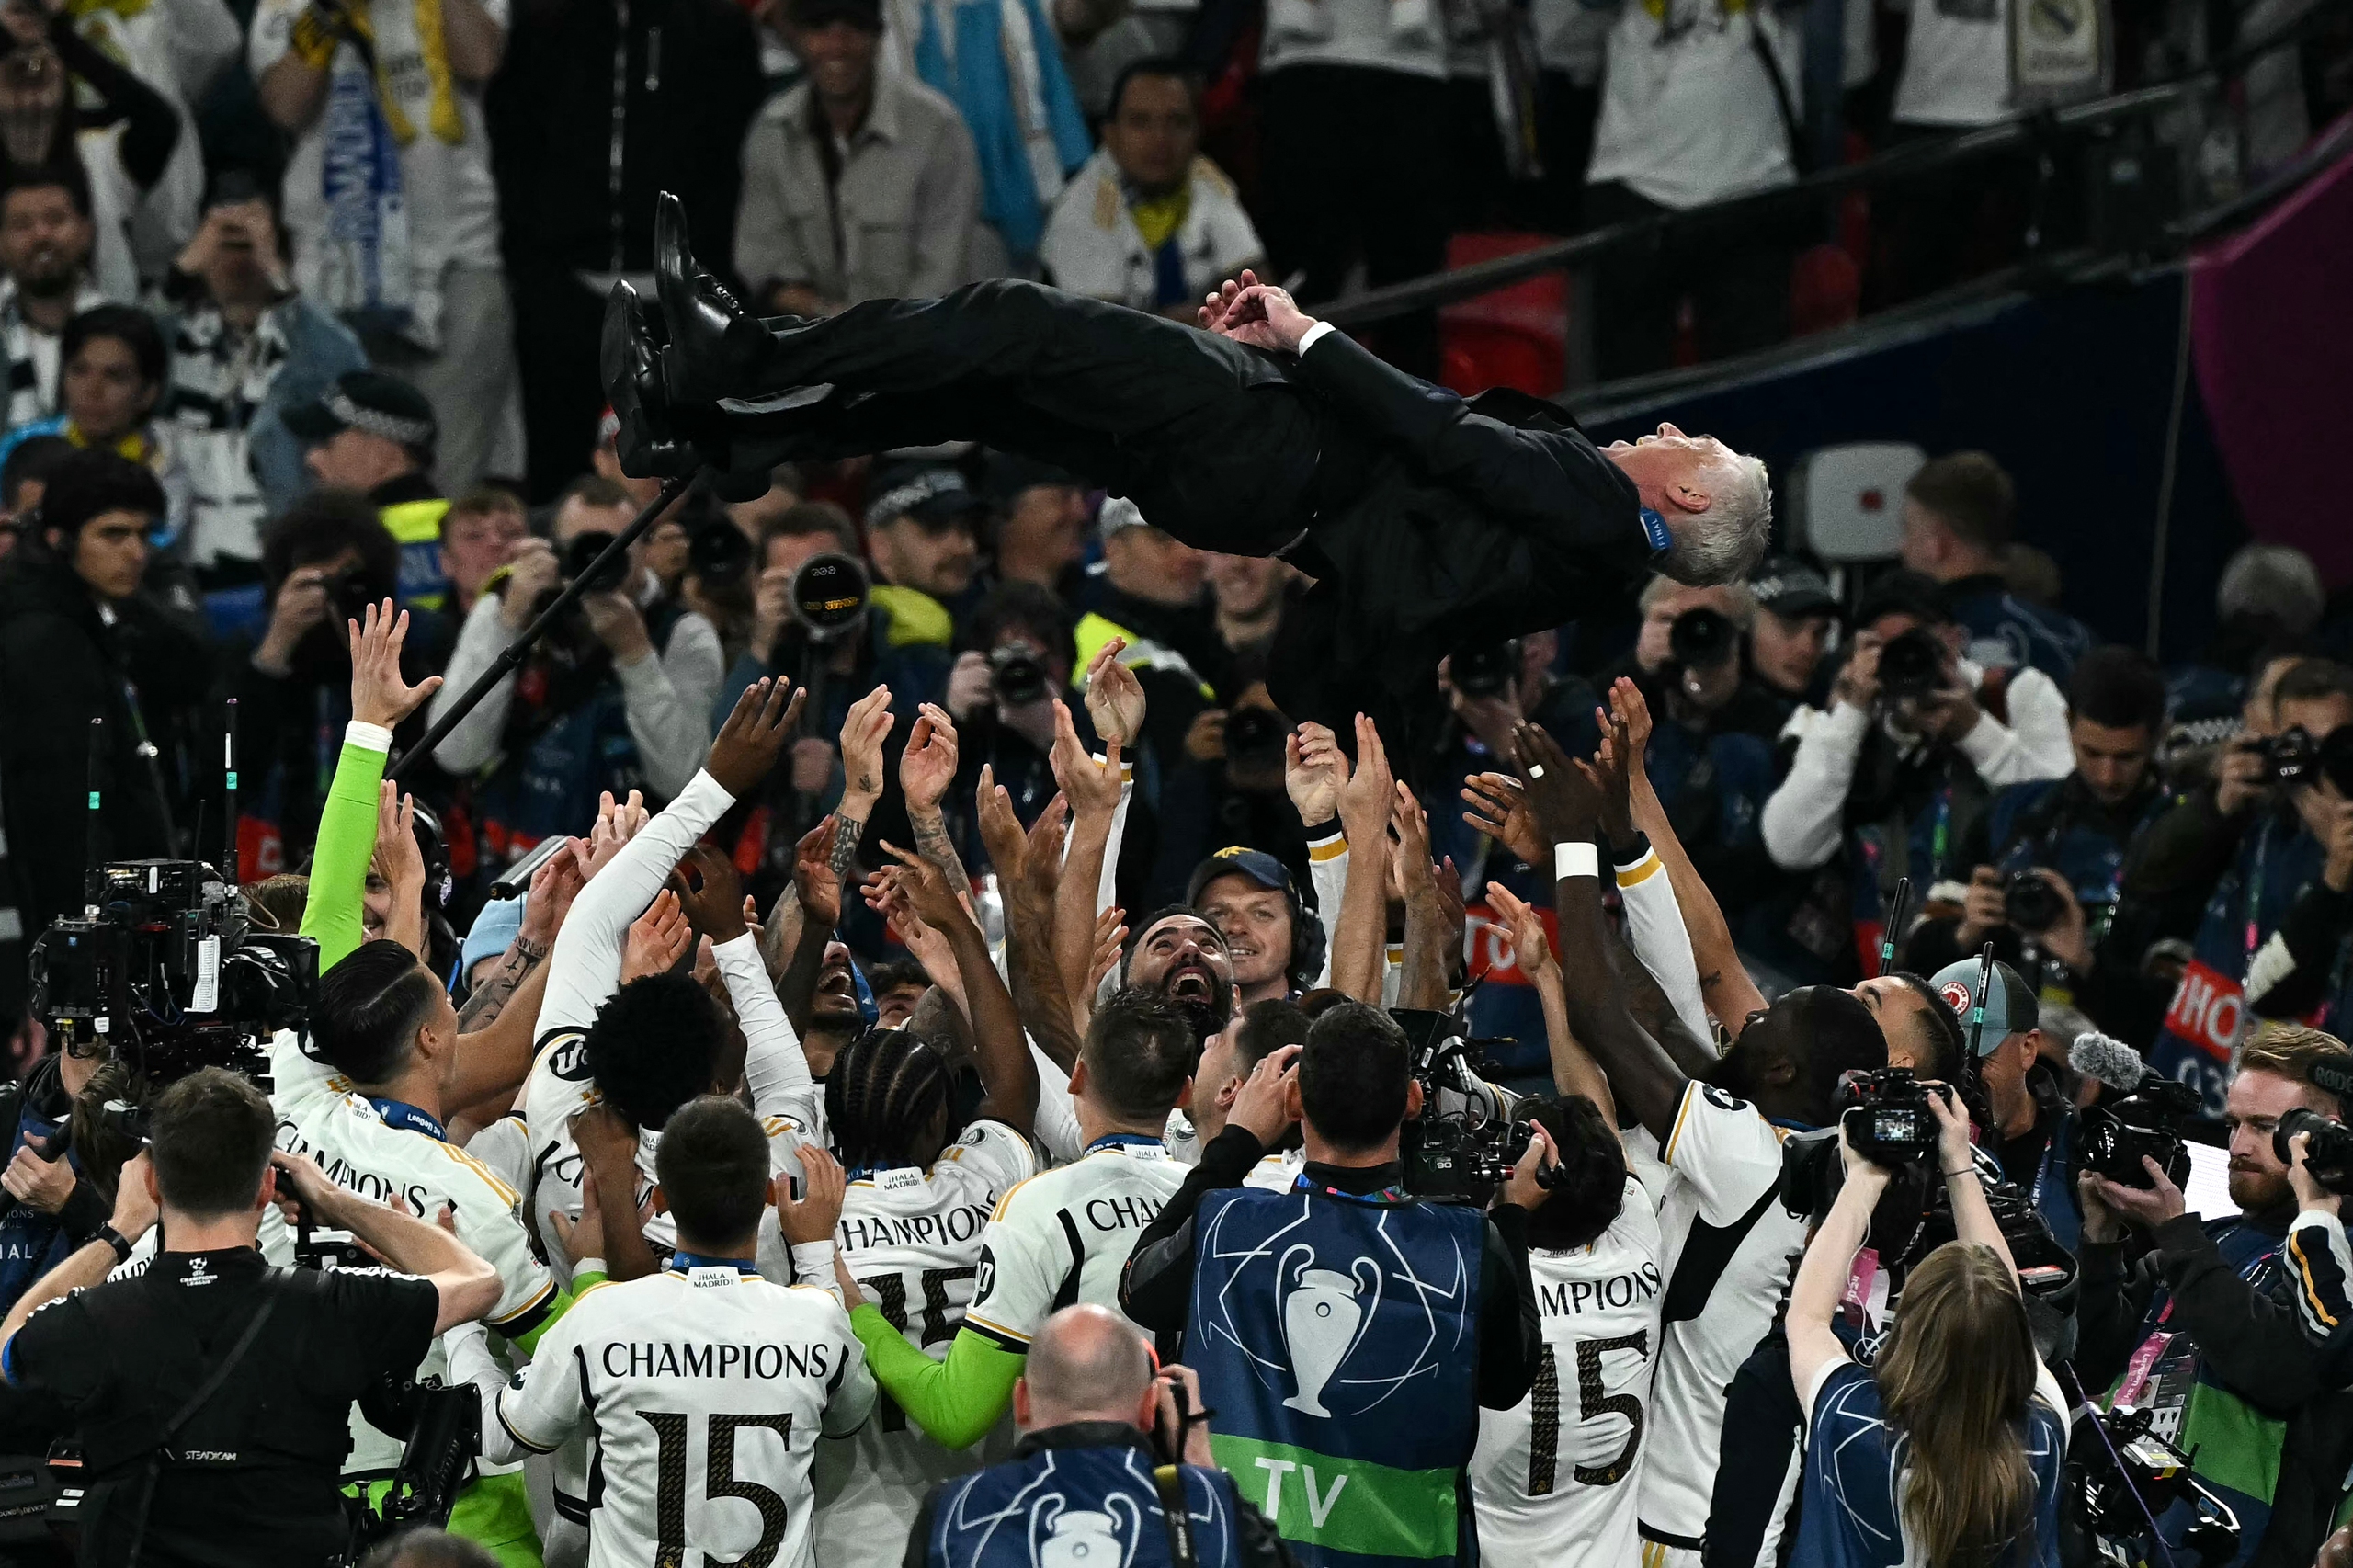 Lần thứ 15 đăng quang, Real Madrid tiếp tục làm bá chủ giải hàng đầu châu Âu- Ảnh 11.